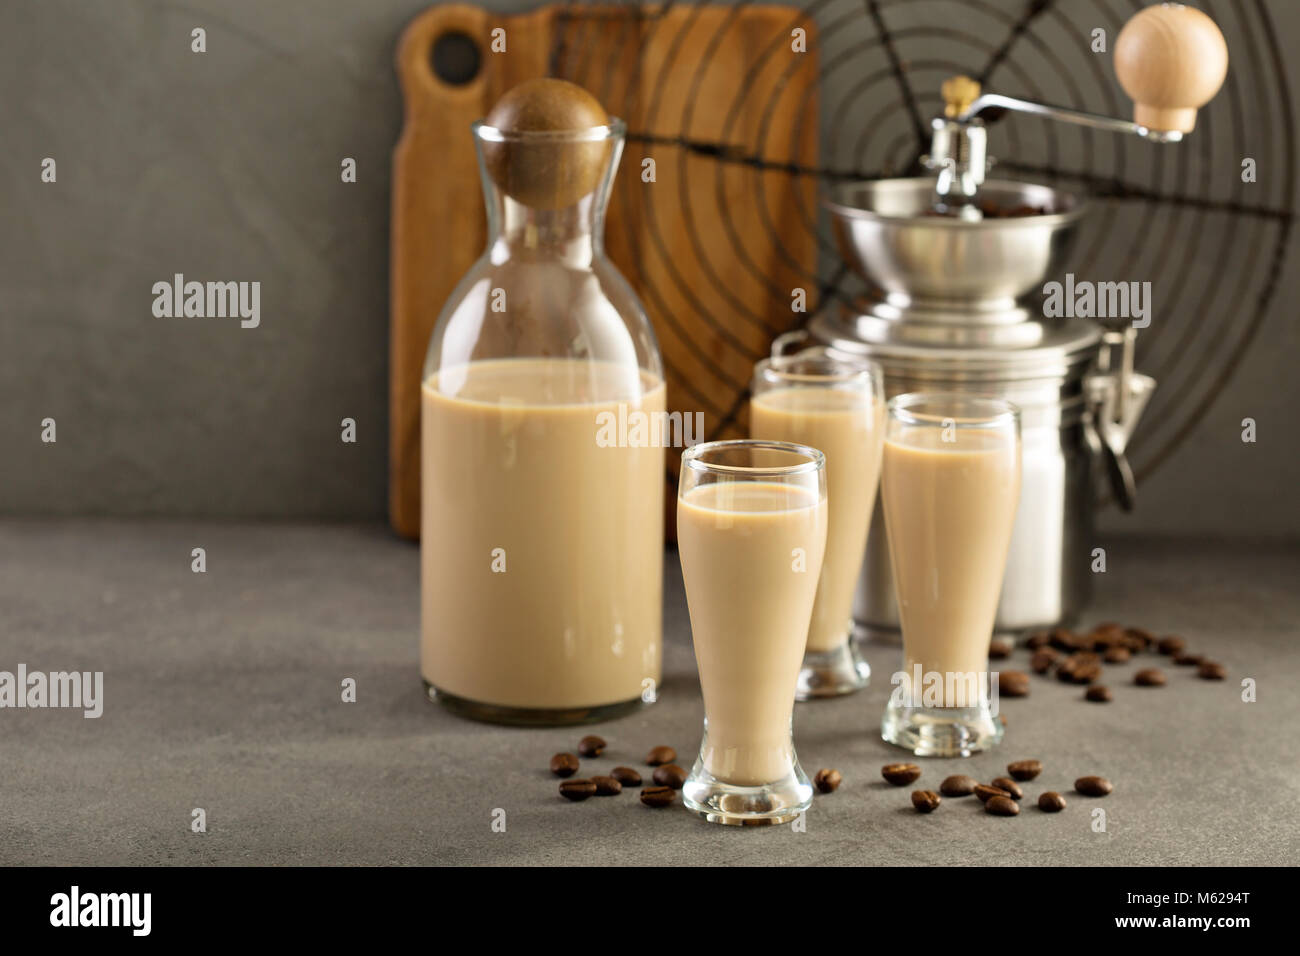 Homemade irish cream and coffee liquor Stock Photo